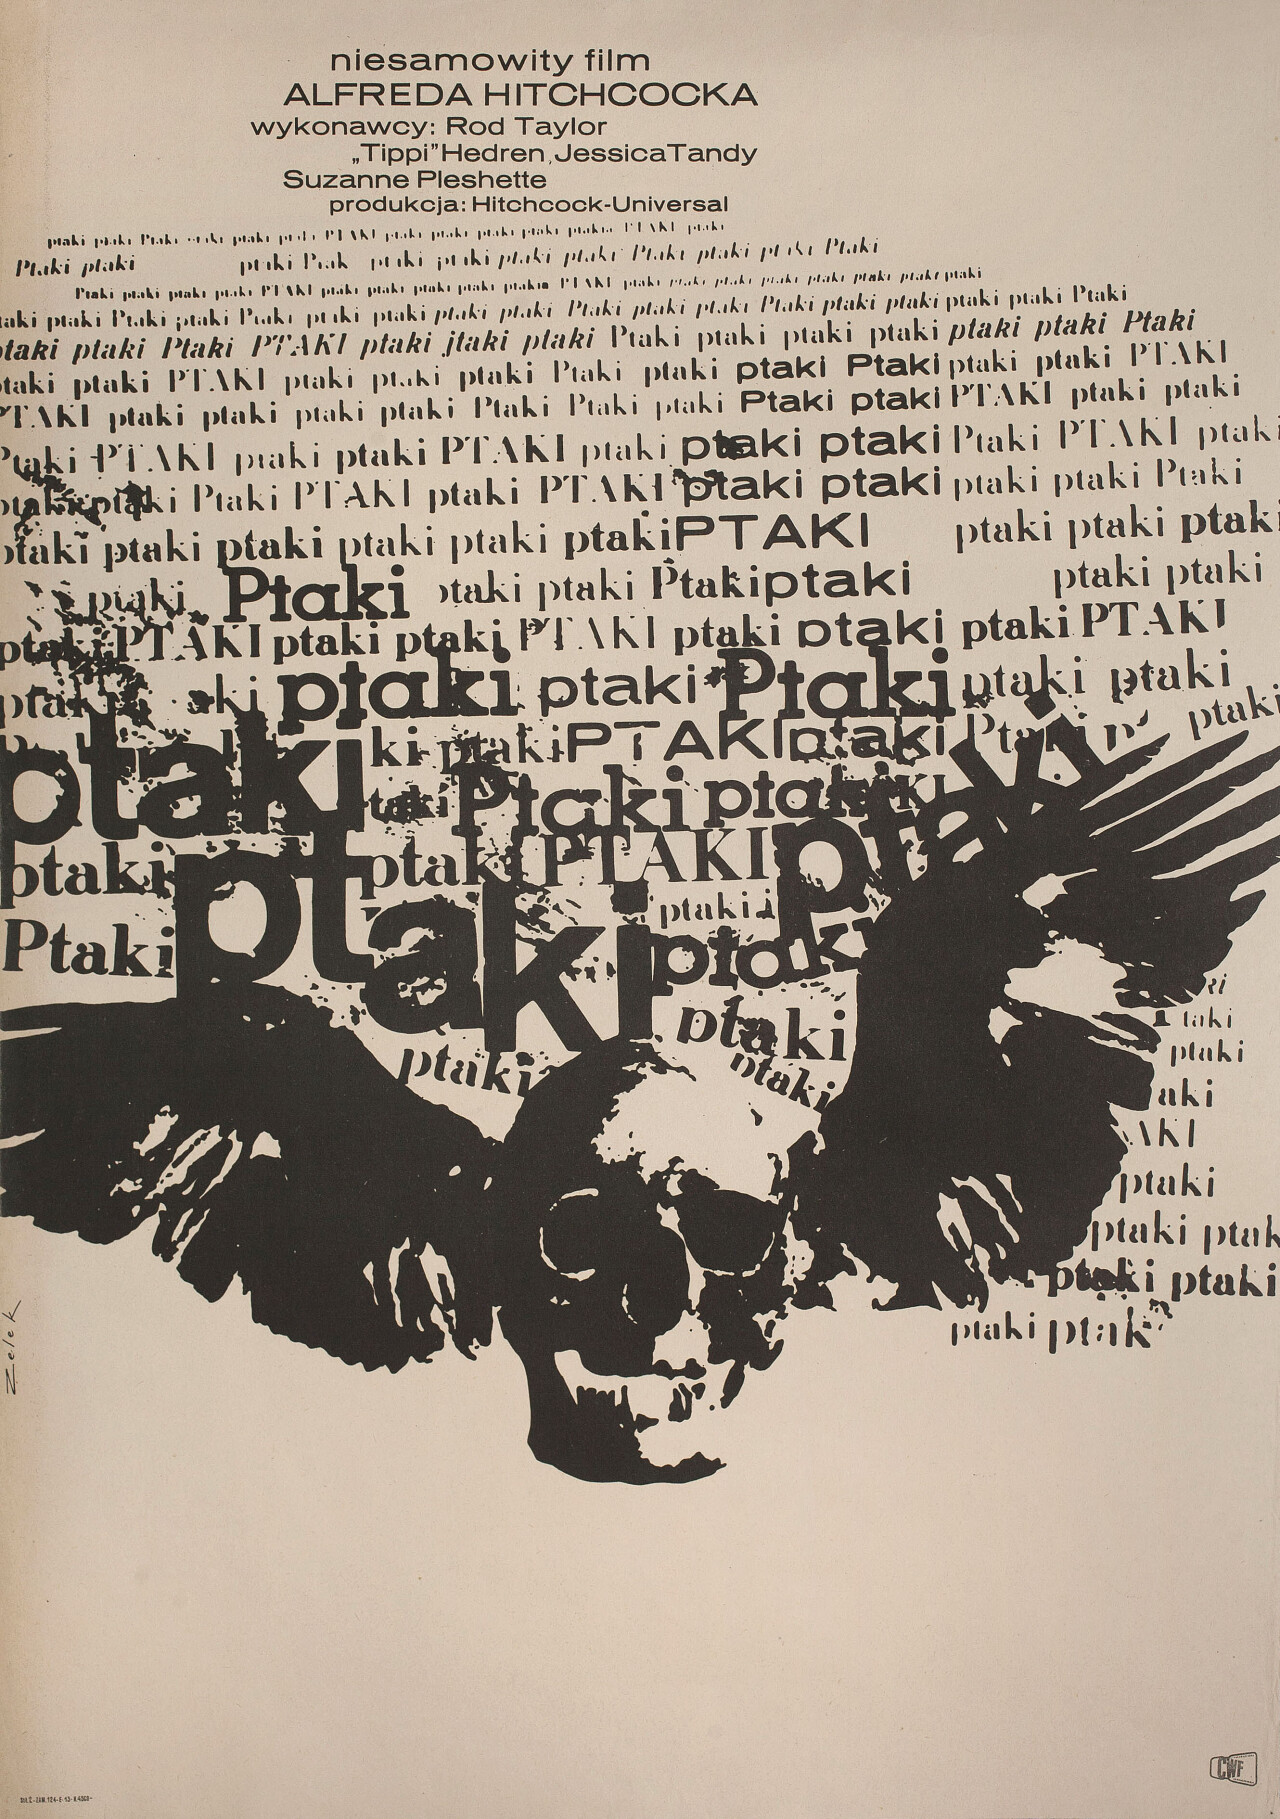 Птицы (The Birds, 1963), режиссёр Альфред Хичкок, польский постер к фильму, автор Бронислав Зелек (ужасы, 1963 год)